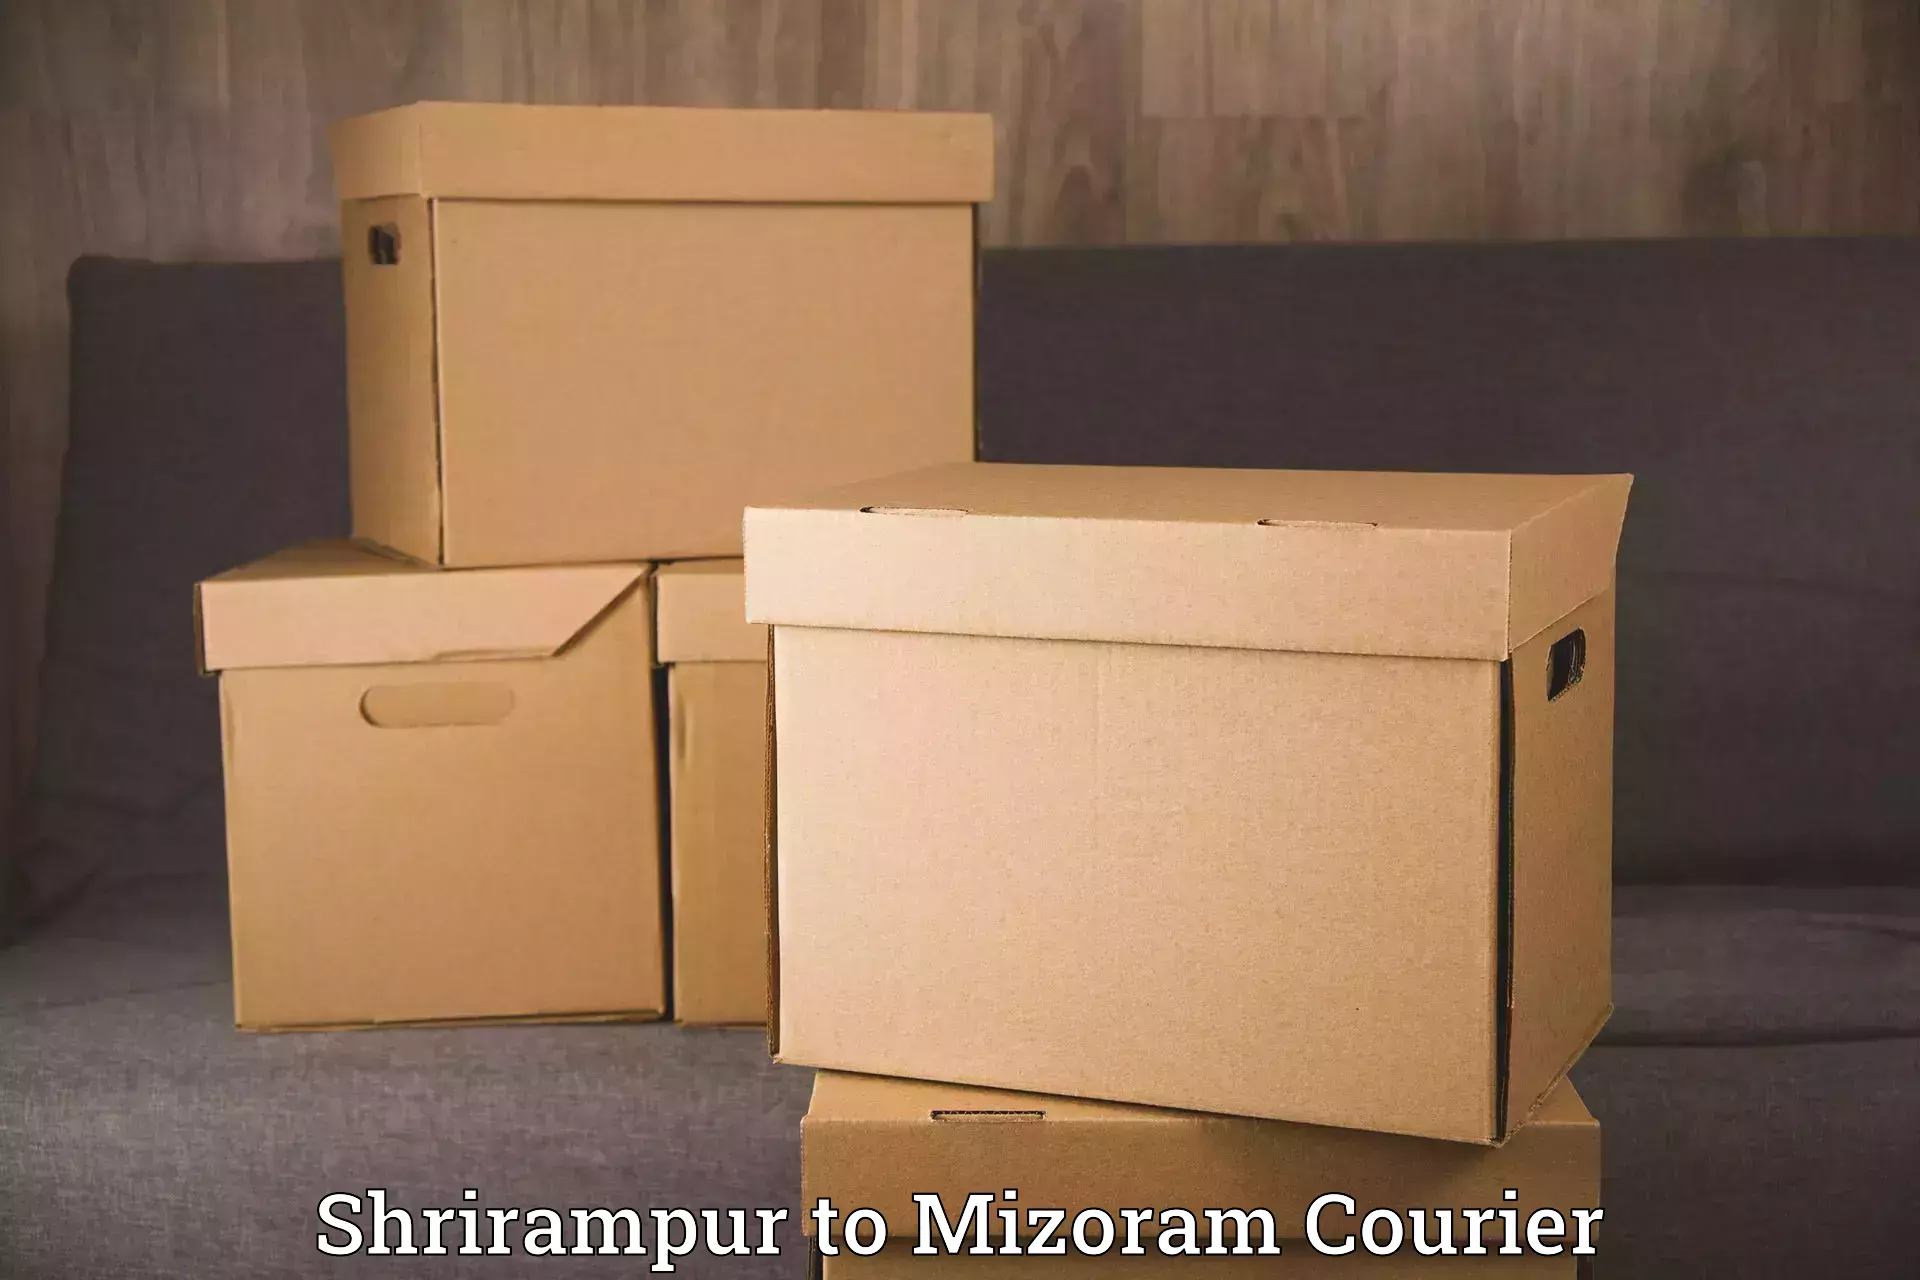 Furniture transport professionals Shrirampur to Mizoram